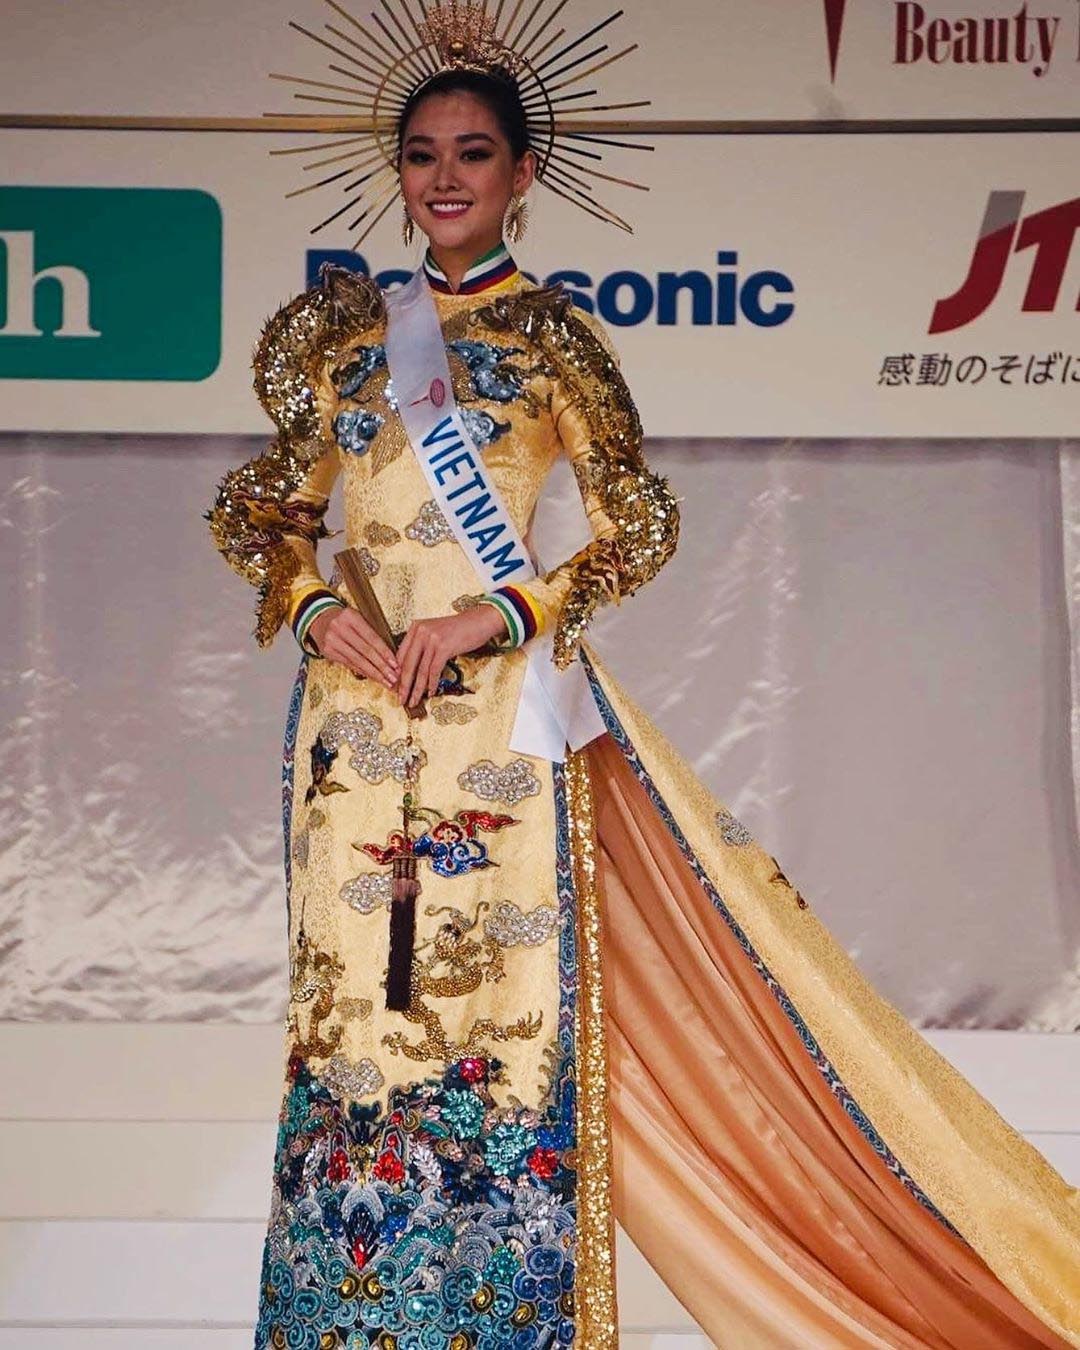 Bộ trang phục giúp Á hậu Tường San giành giải “Trang phục dân tộc đẹp nhất“. Ảnh: MS.